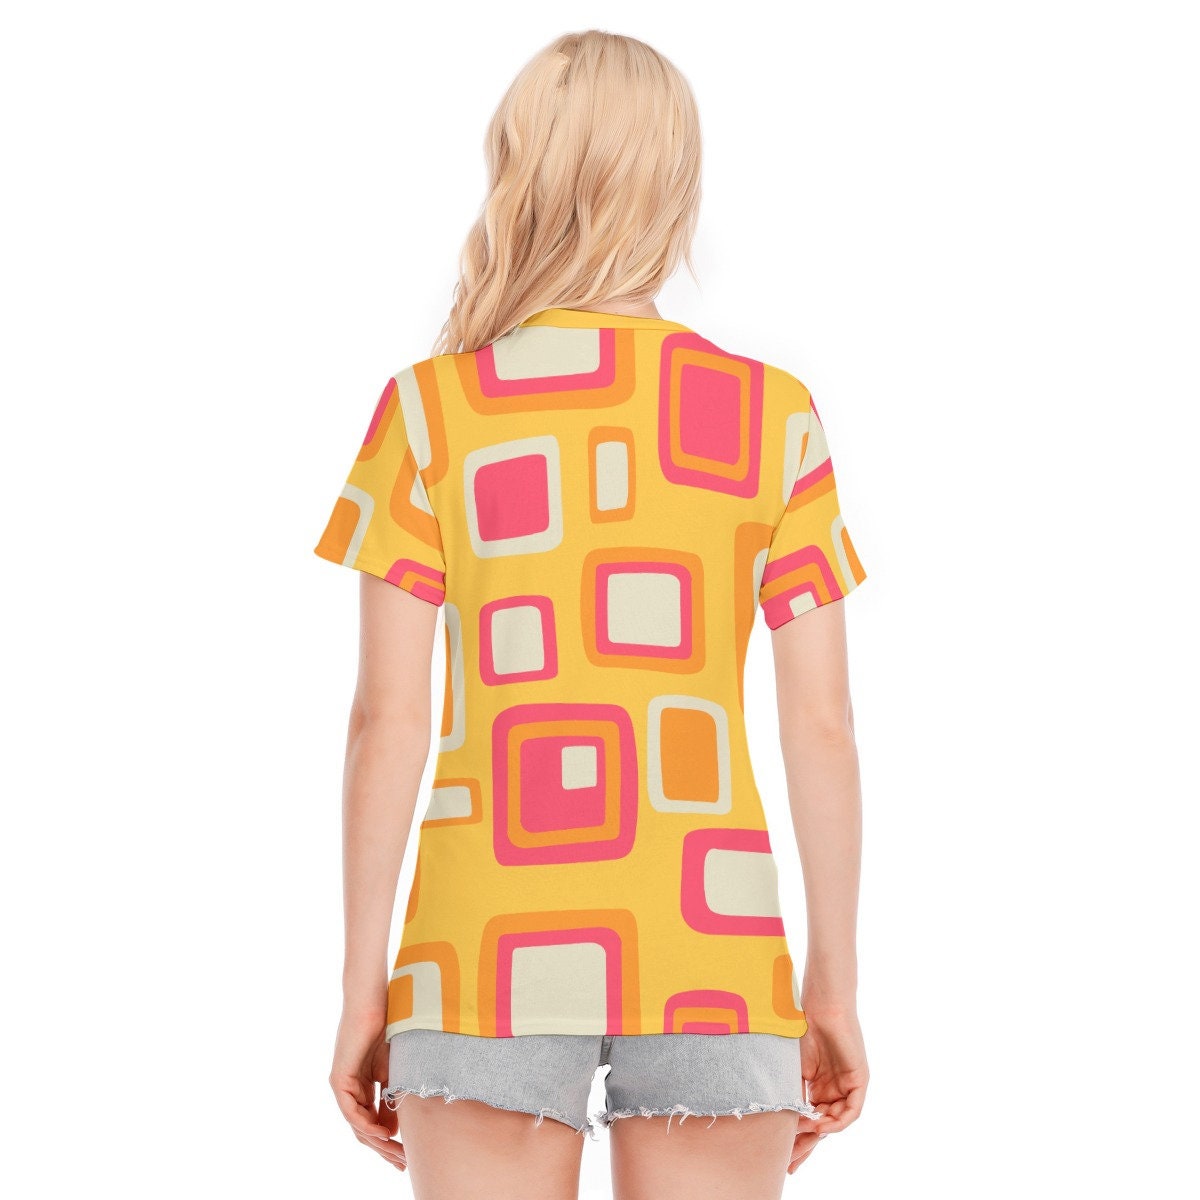 Retro-T-Shirt, Mod-Top, Damen-T-Shirts, Top im 60er-Jahre-Stil, T-Shirt im Vintage-Stil, Retro-Top, Damen-Tops, 60er-Mod-Top, gelbes Mod, geometrisches Top